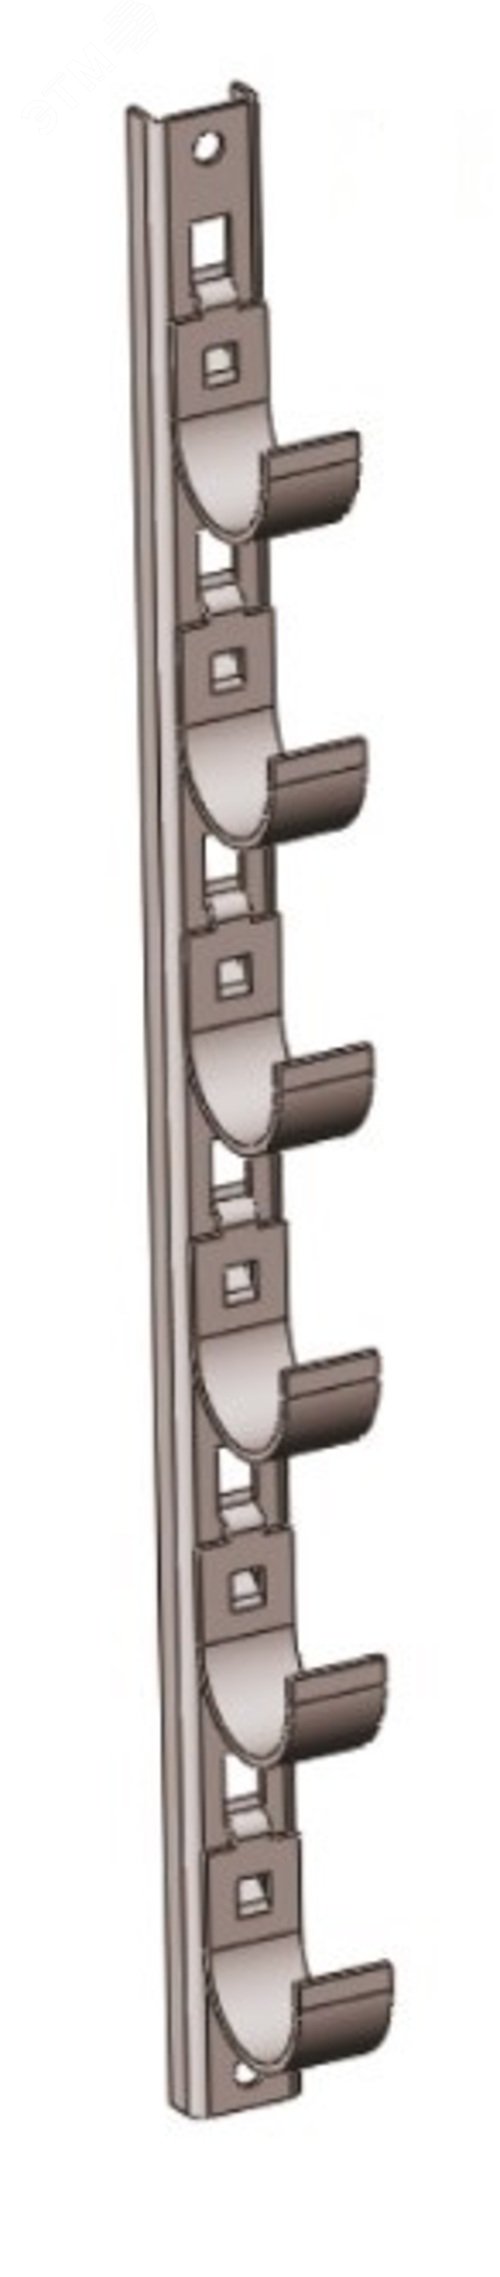 Кронштейн рожковый прямолинейный Р1В3 с 3 рожками, окрашенный ОС-12-03 П, S3,0 П0000006226 Завод ЭМИ Курган